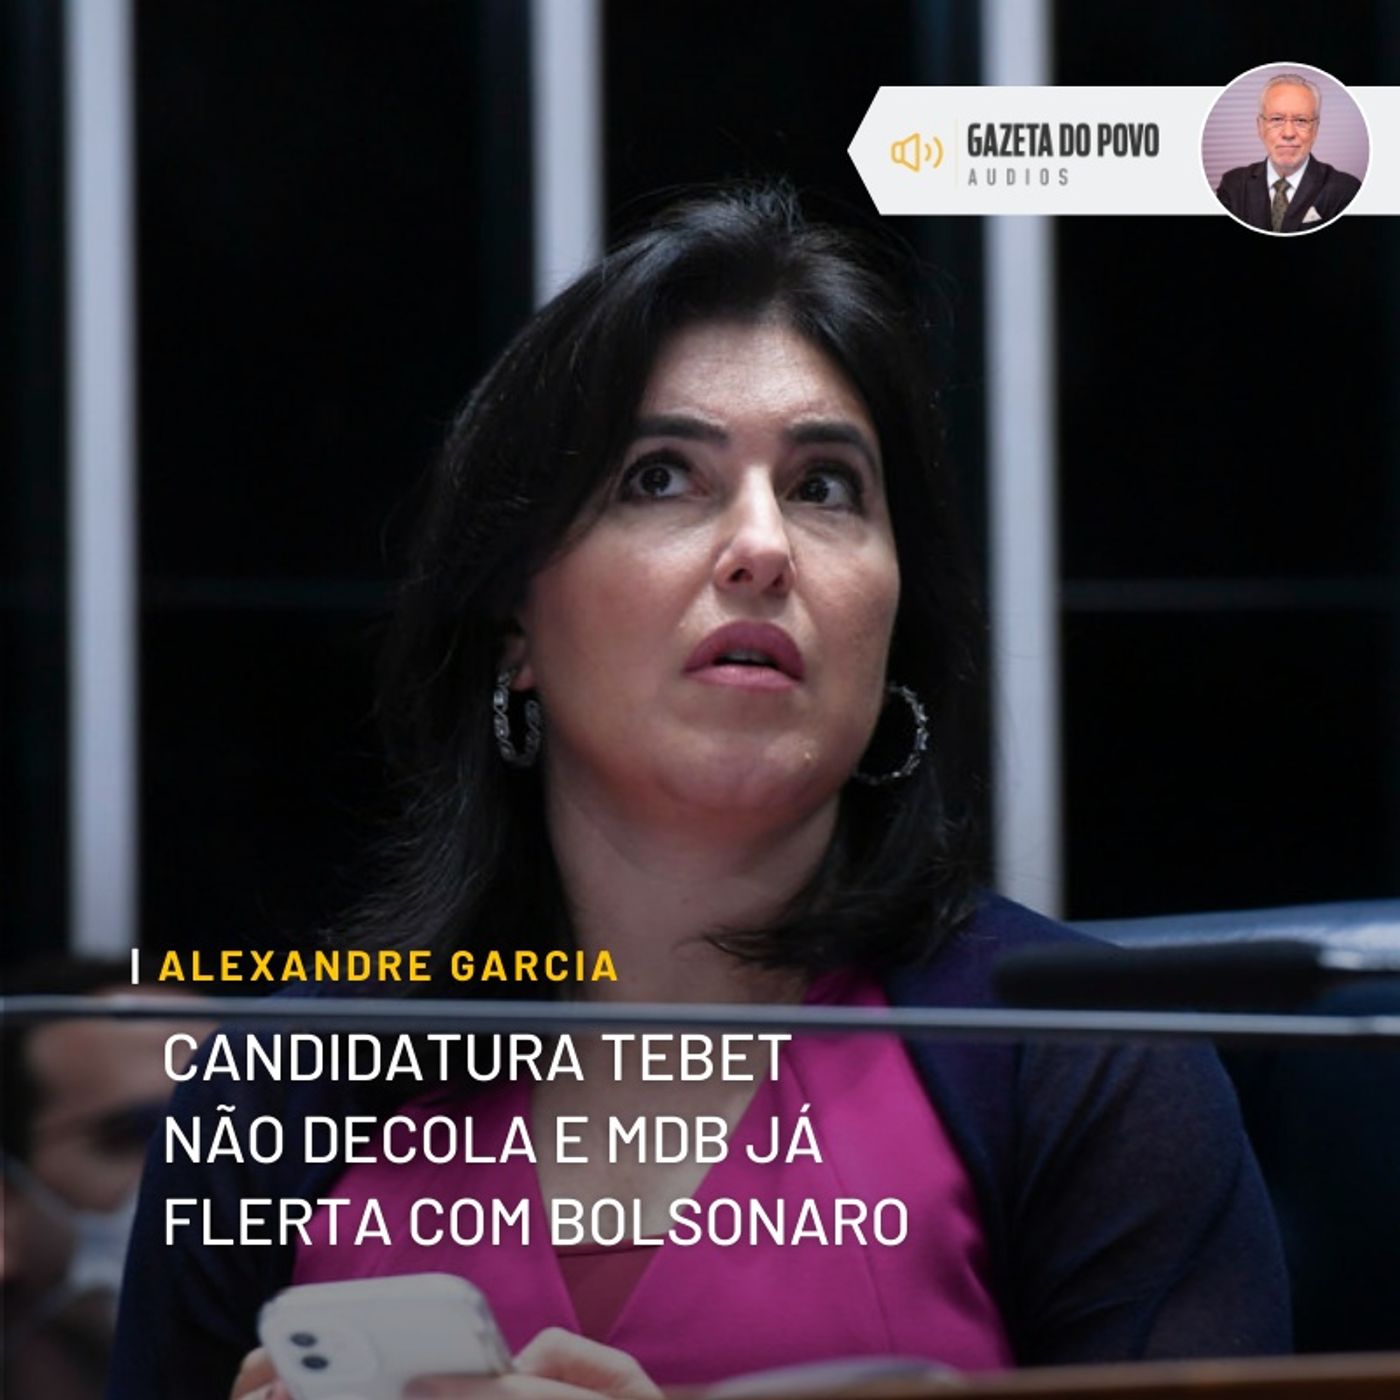 Candidatura Tebet não decola e MDB já flerta com Bolsonaro